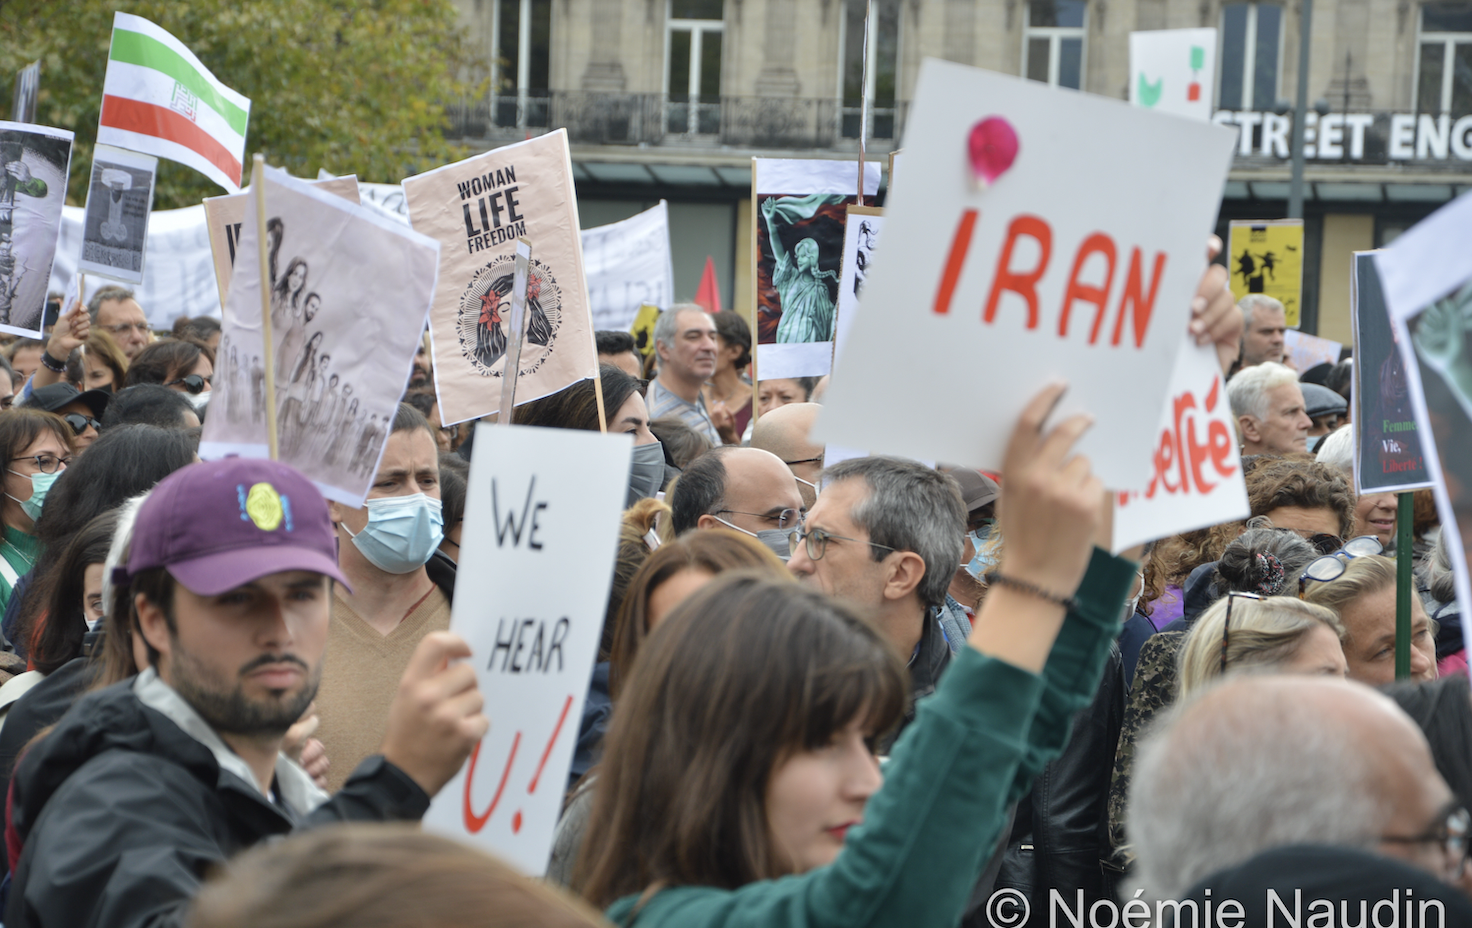 Une foule de personnes vue de côté, certaines tiennent des pancartes. Un homme et une femme au premier plan tiennent des pancartes disant "We Hear U!" (Nous vous entendons!) et "Iran" sur du papier blanc.